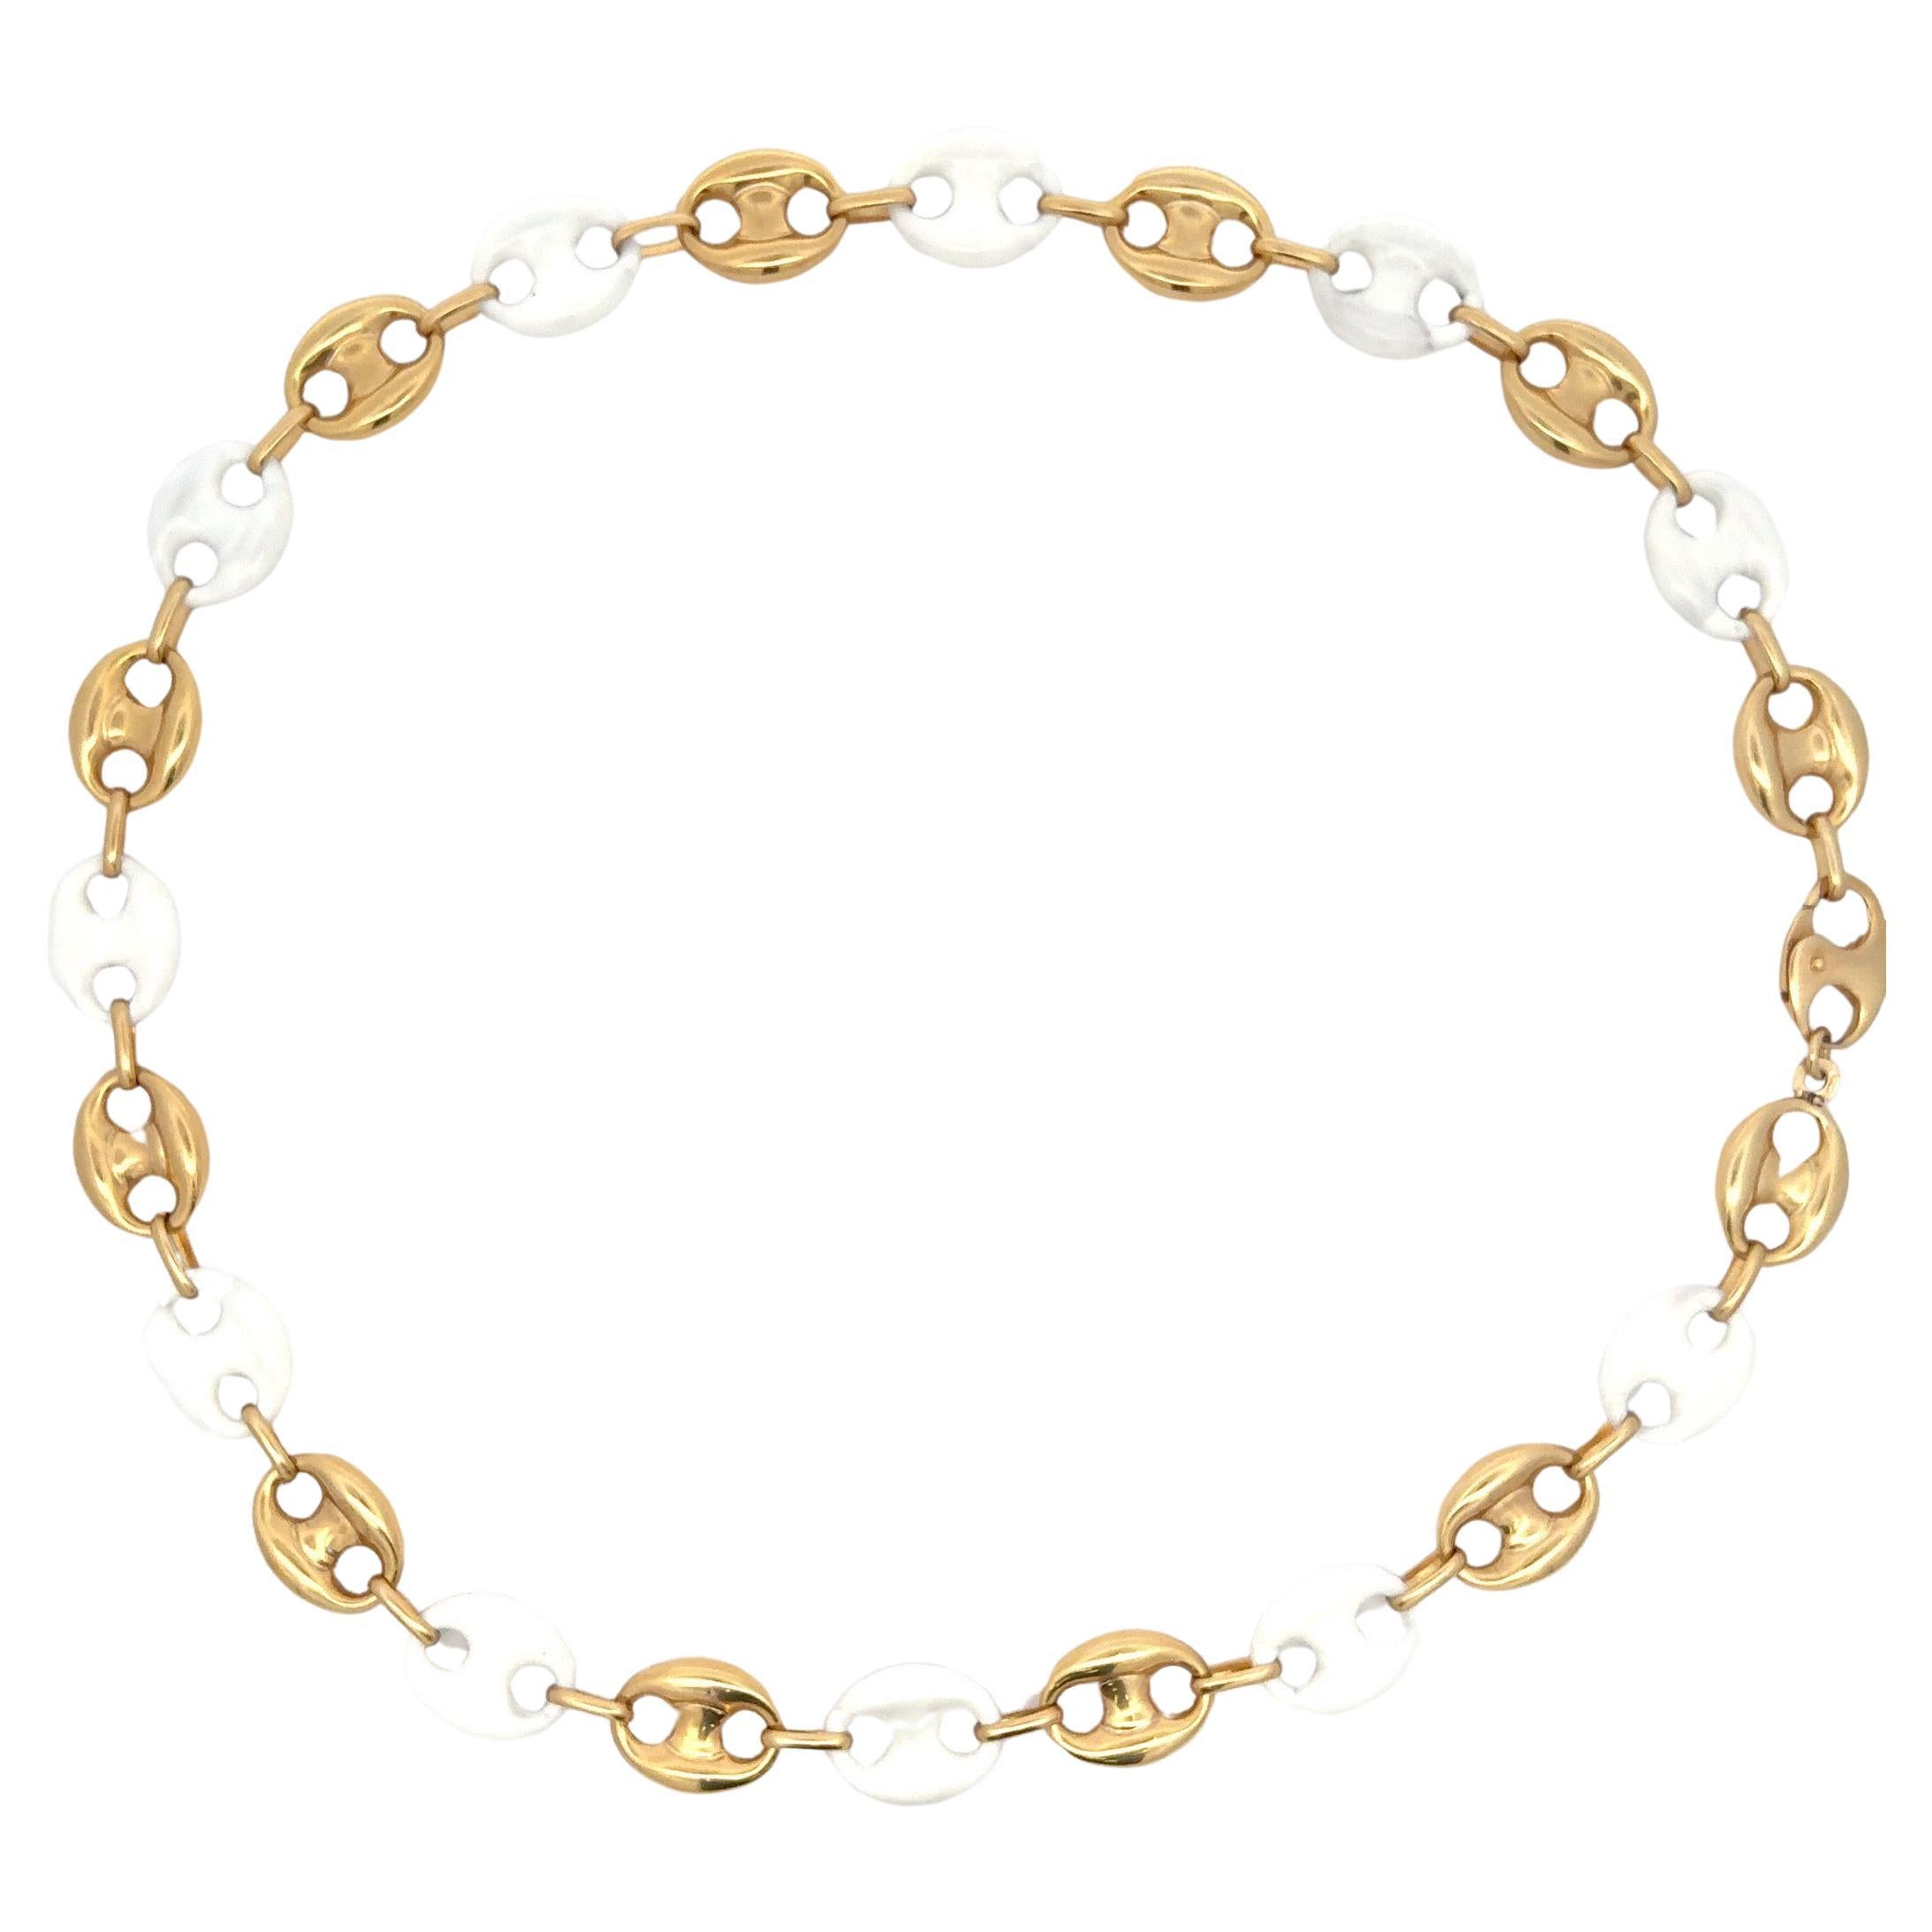 Fabriqué en Italie, ce collier présente une alternance de motifs de style Marin en émail blanc et en or jaune 14 carats, pour un poids de 25 grammes.

Disponible en différentes couleurs et bracelets
DM pour plus de photos et de prix